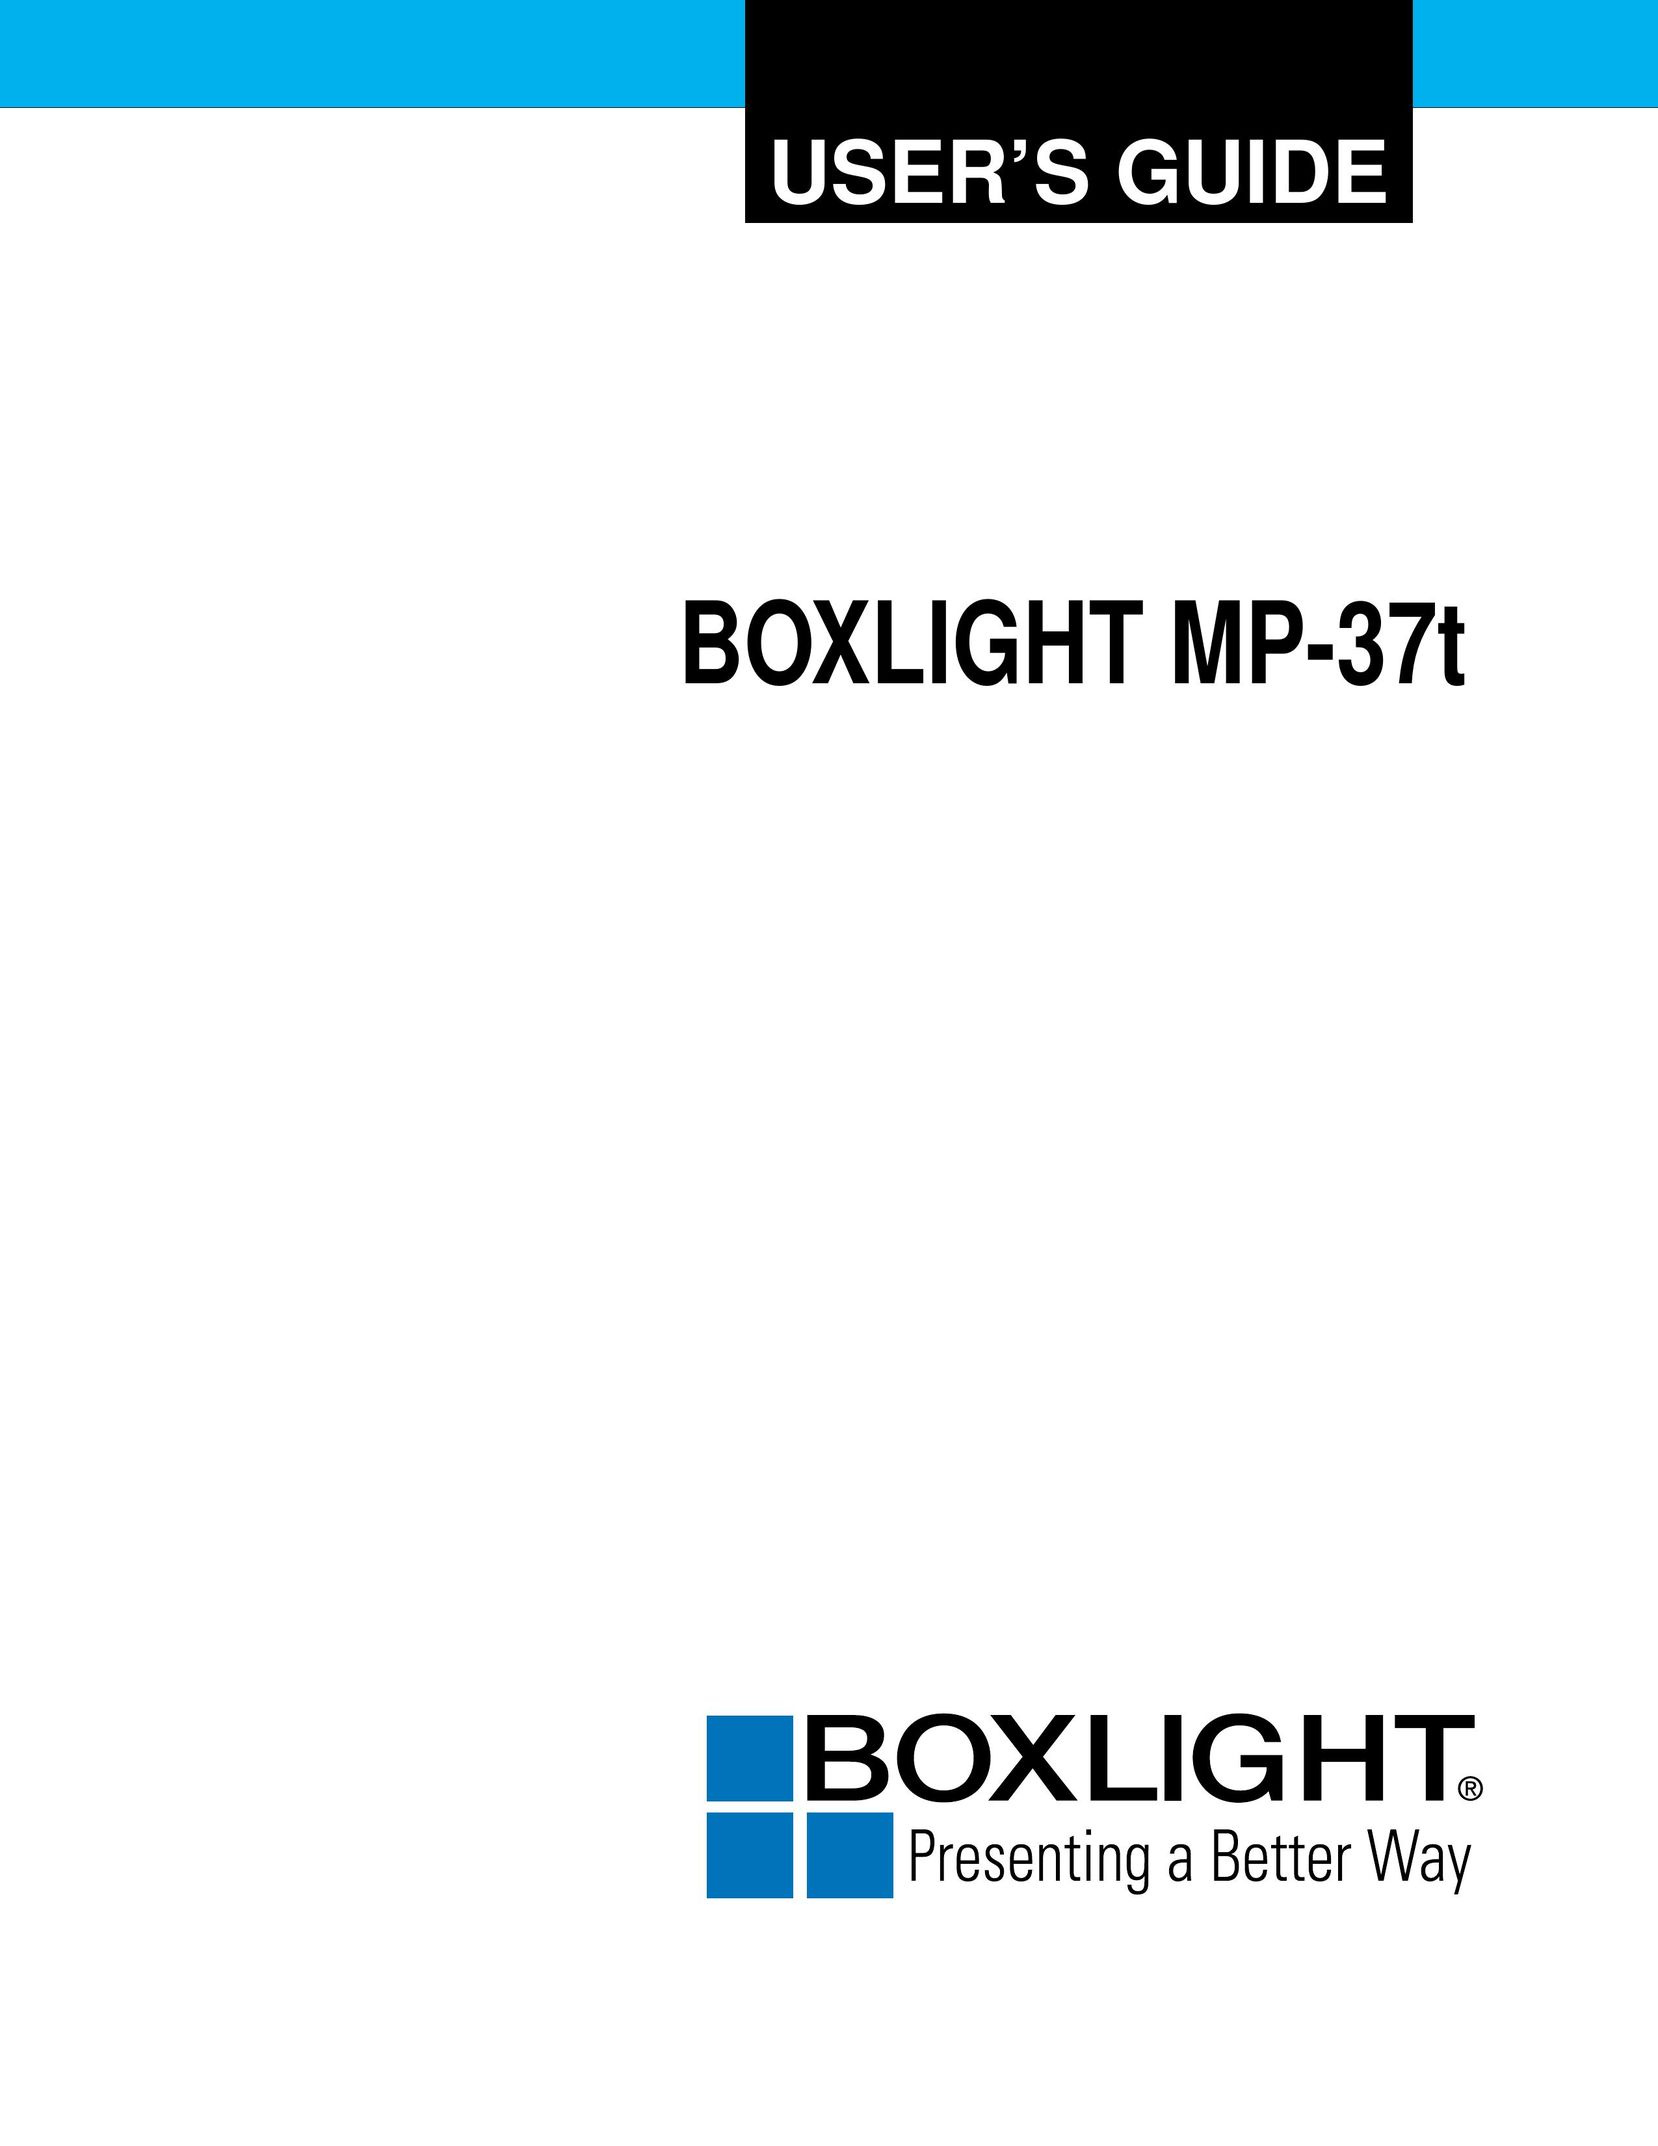 BOXLIGHT MP-37t Projector User Manual